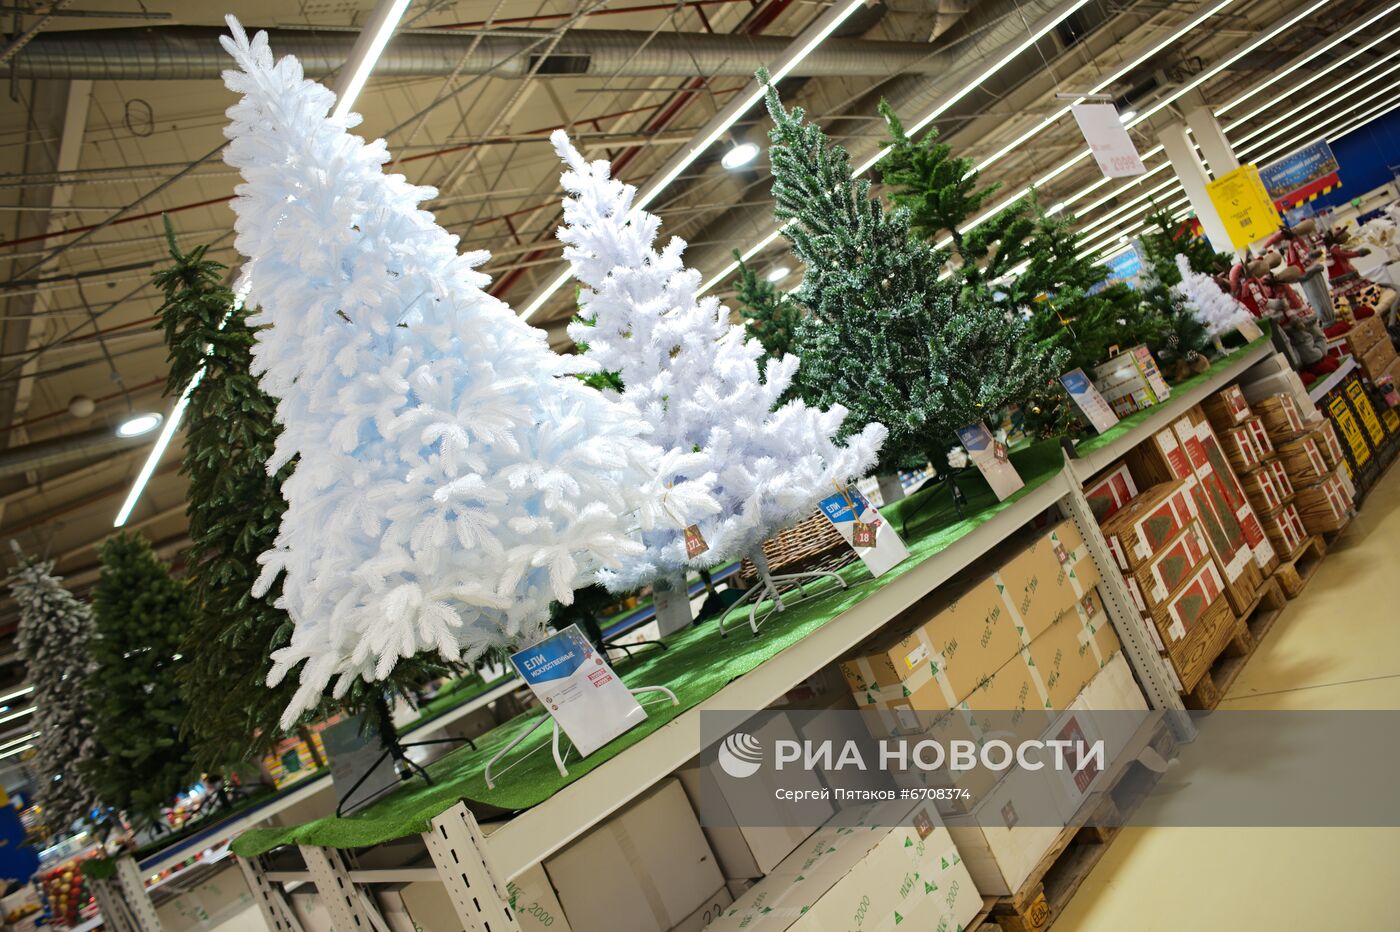 Предновогодняя торговля в гипермаркете "Метро" в Москве